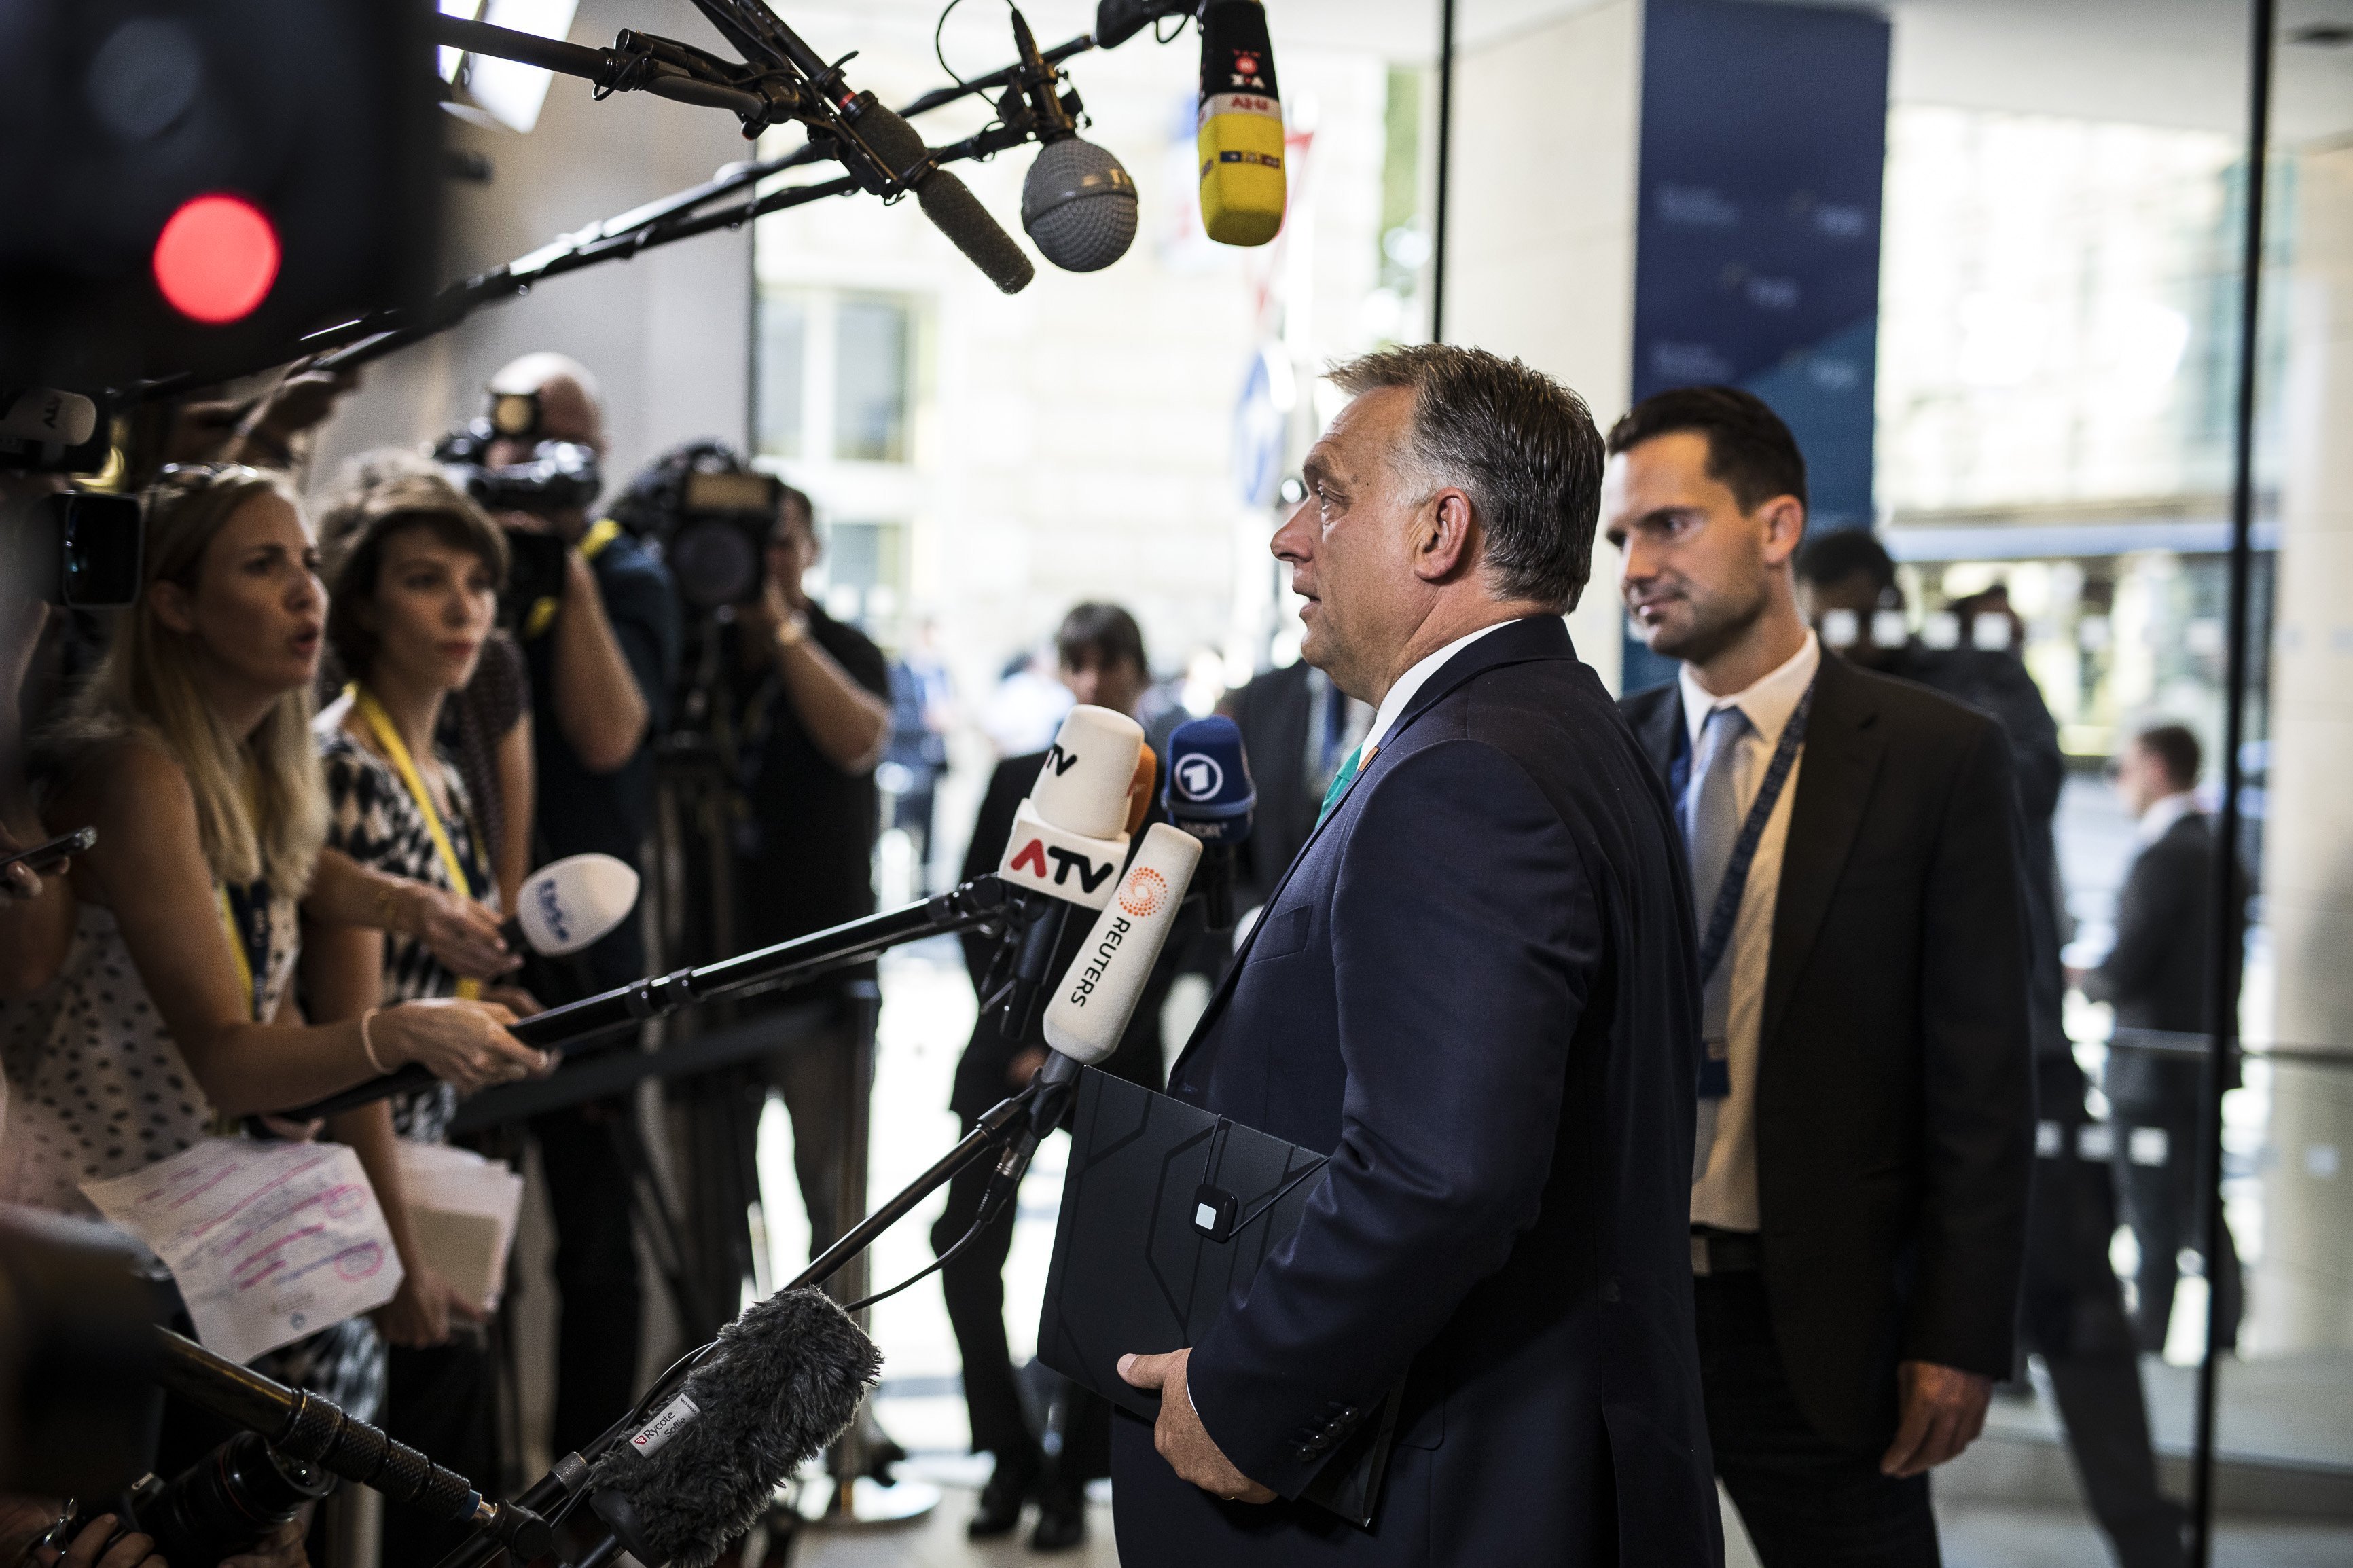 Uniós csúcs Salzburgban: Orbán határokról, Weber a magyar jogállamiságról beszélgetne